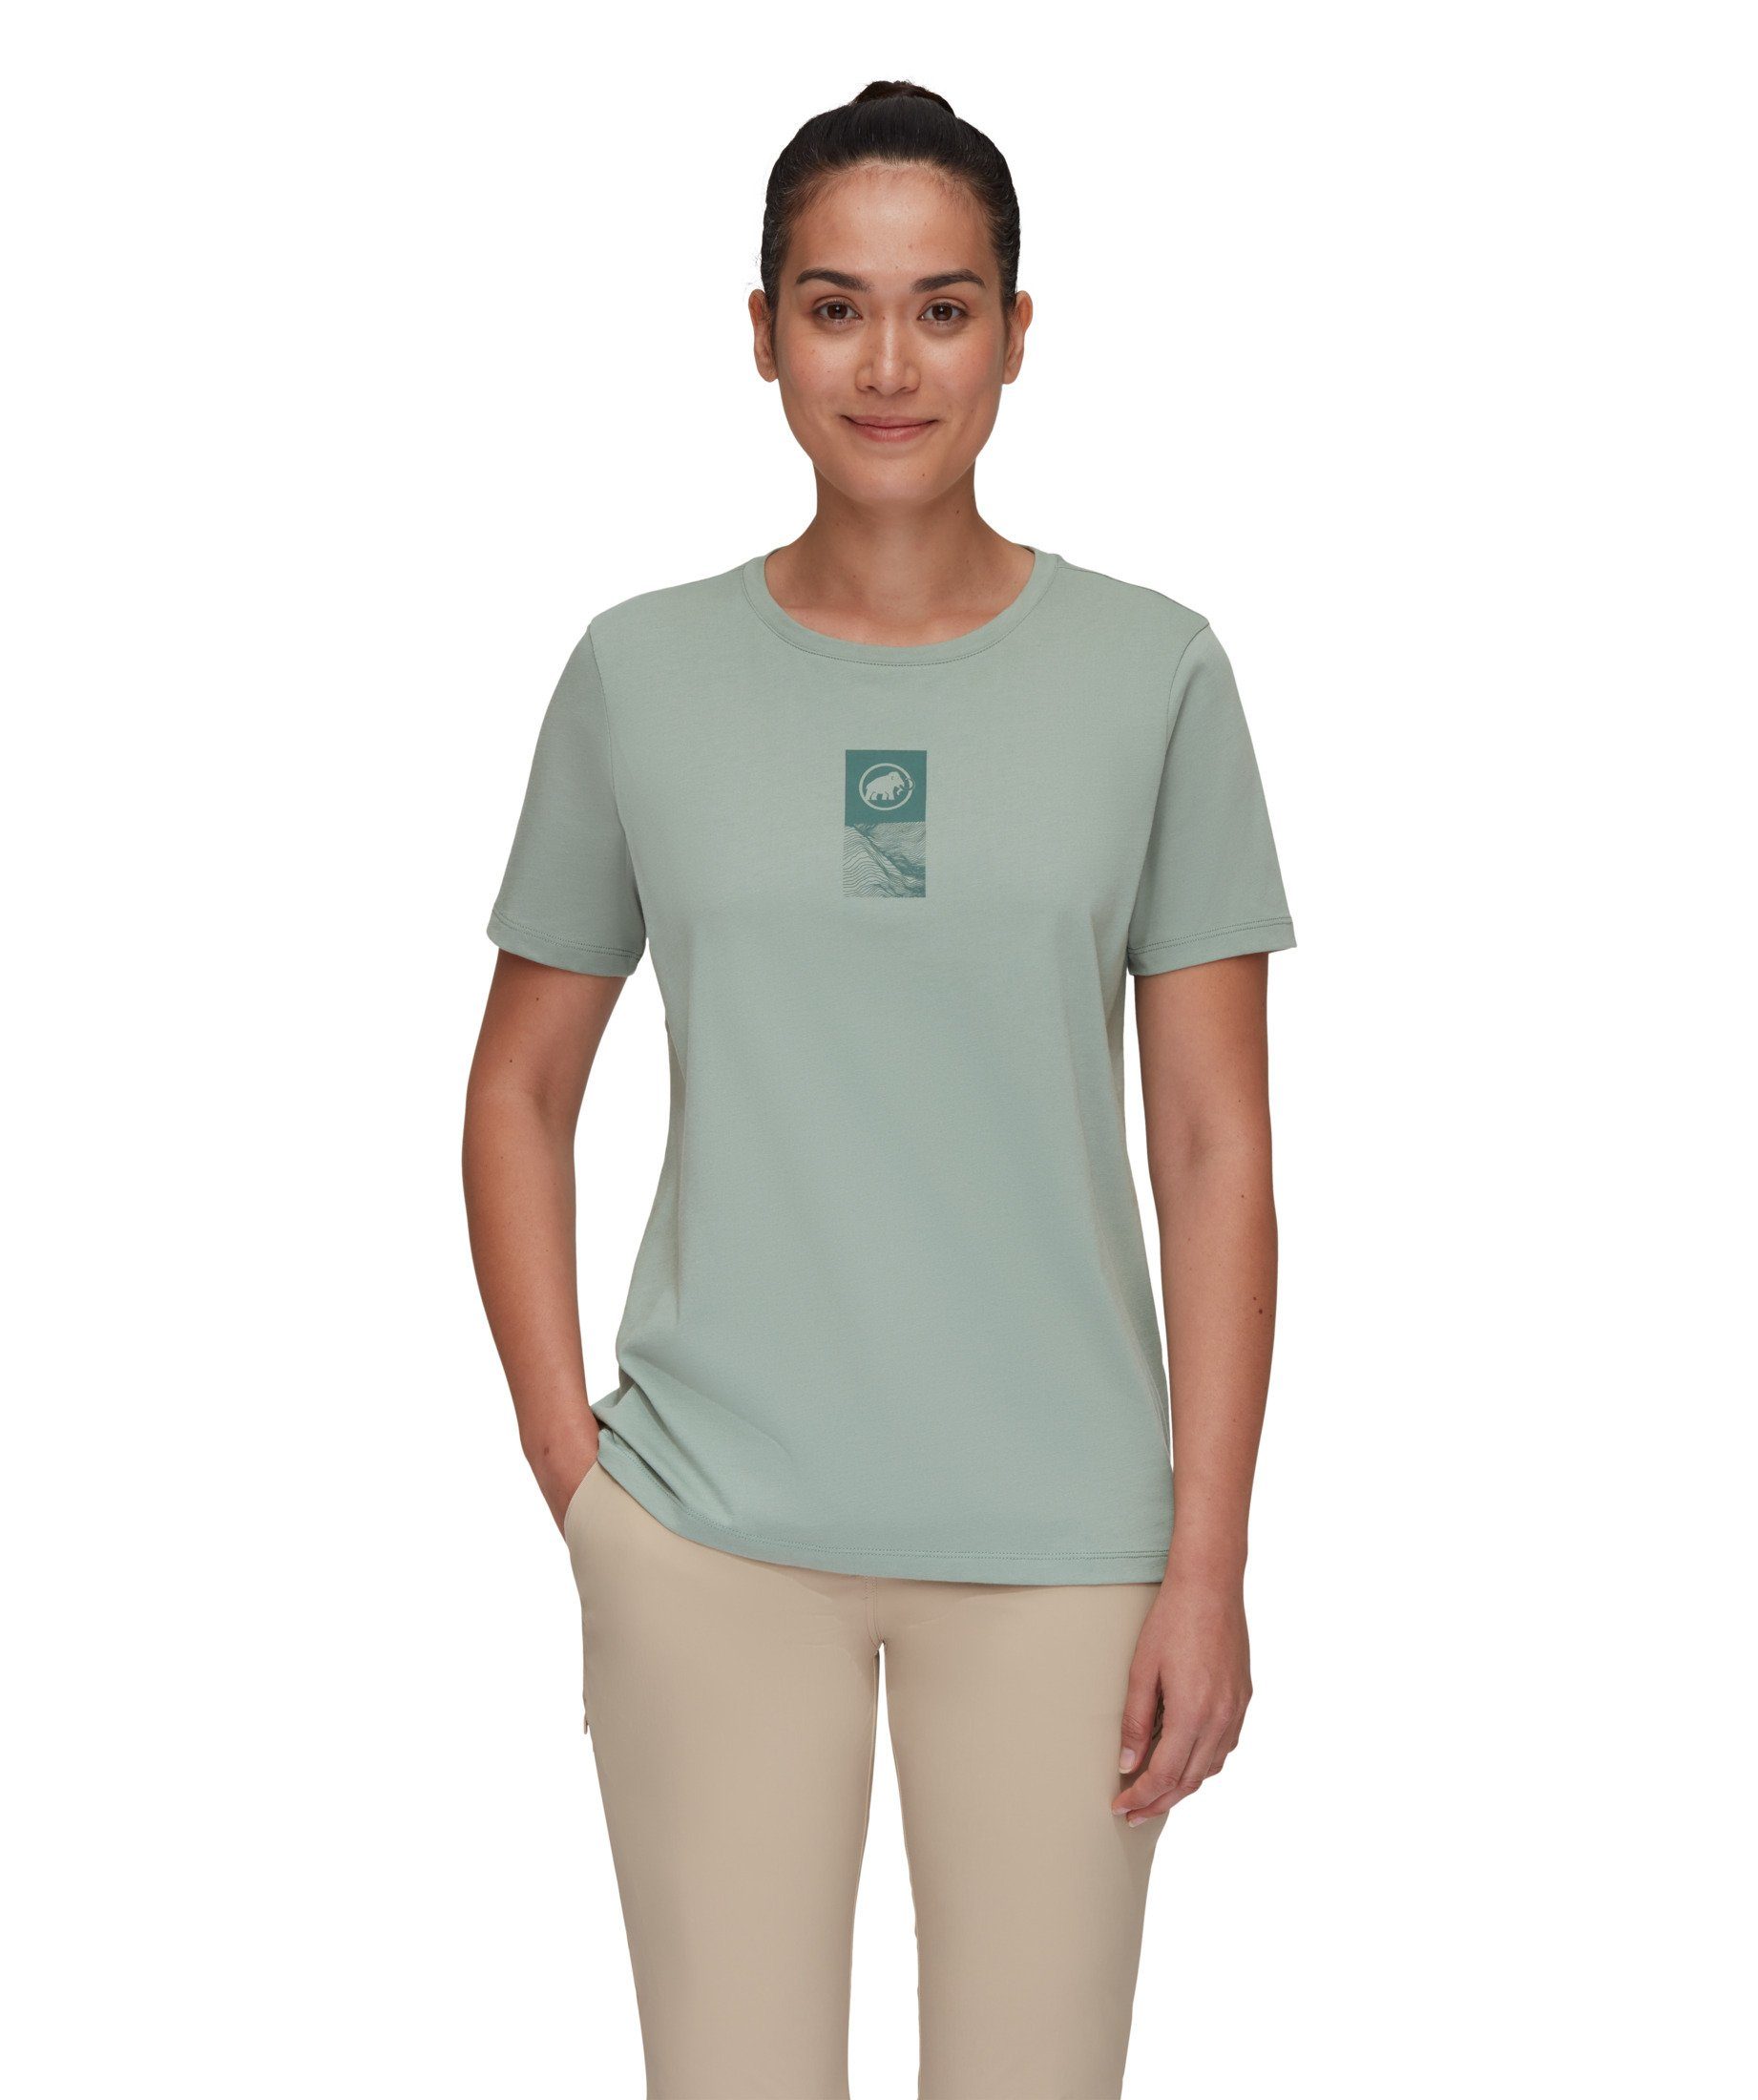 Mammut T-Shirt jade Women Core Mammut Emblem T-Shirt